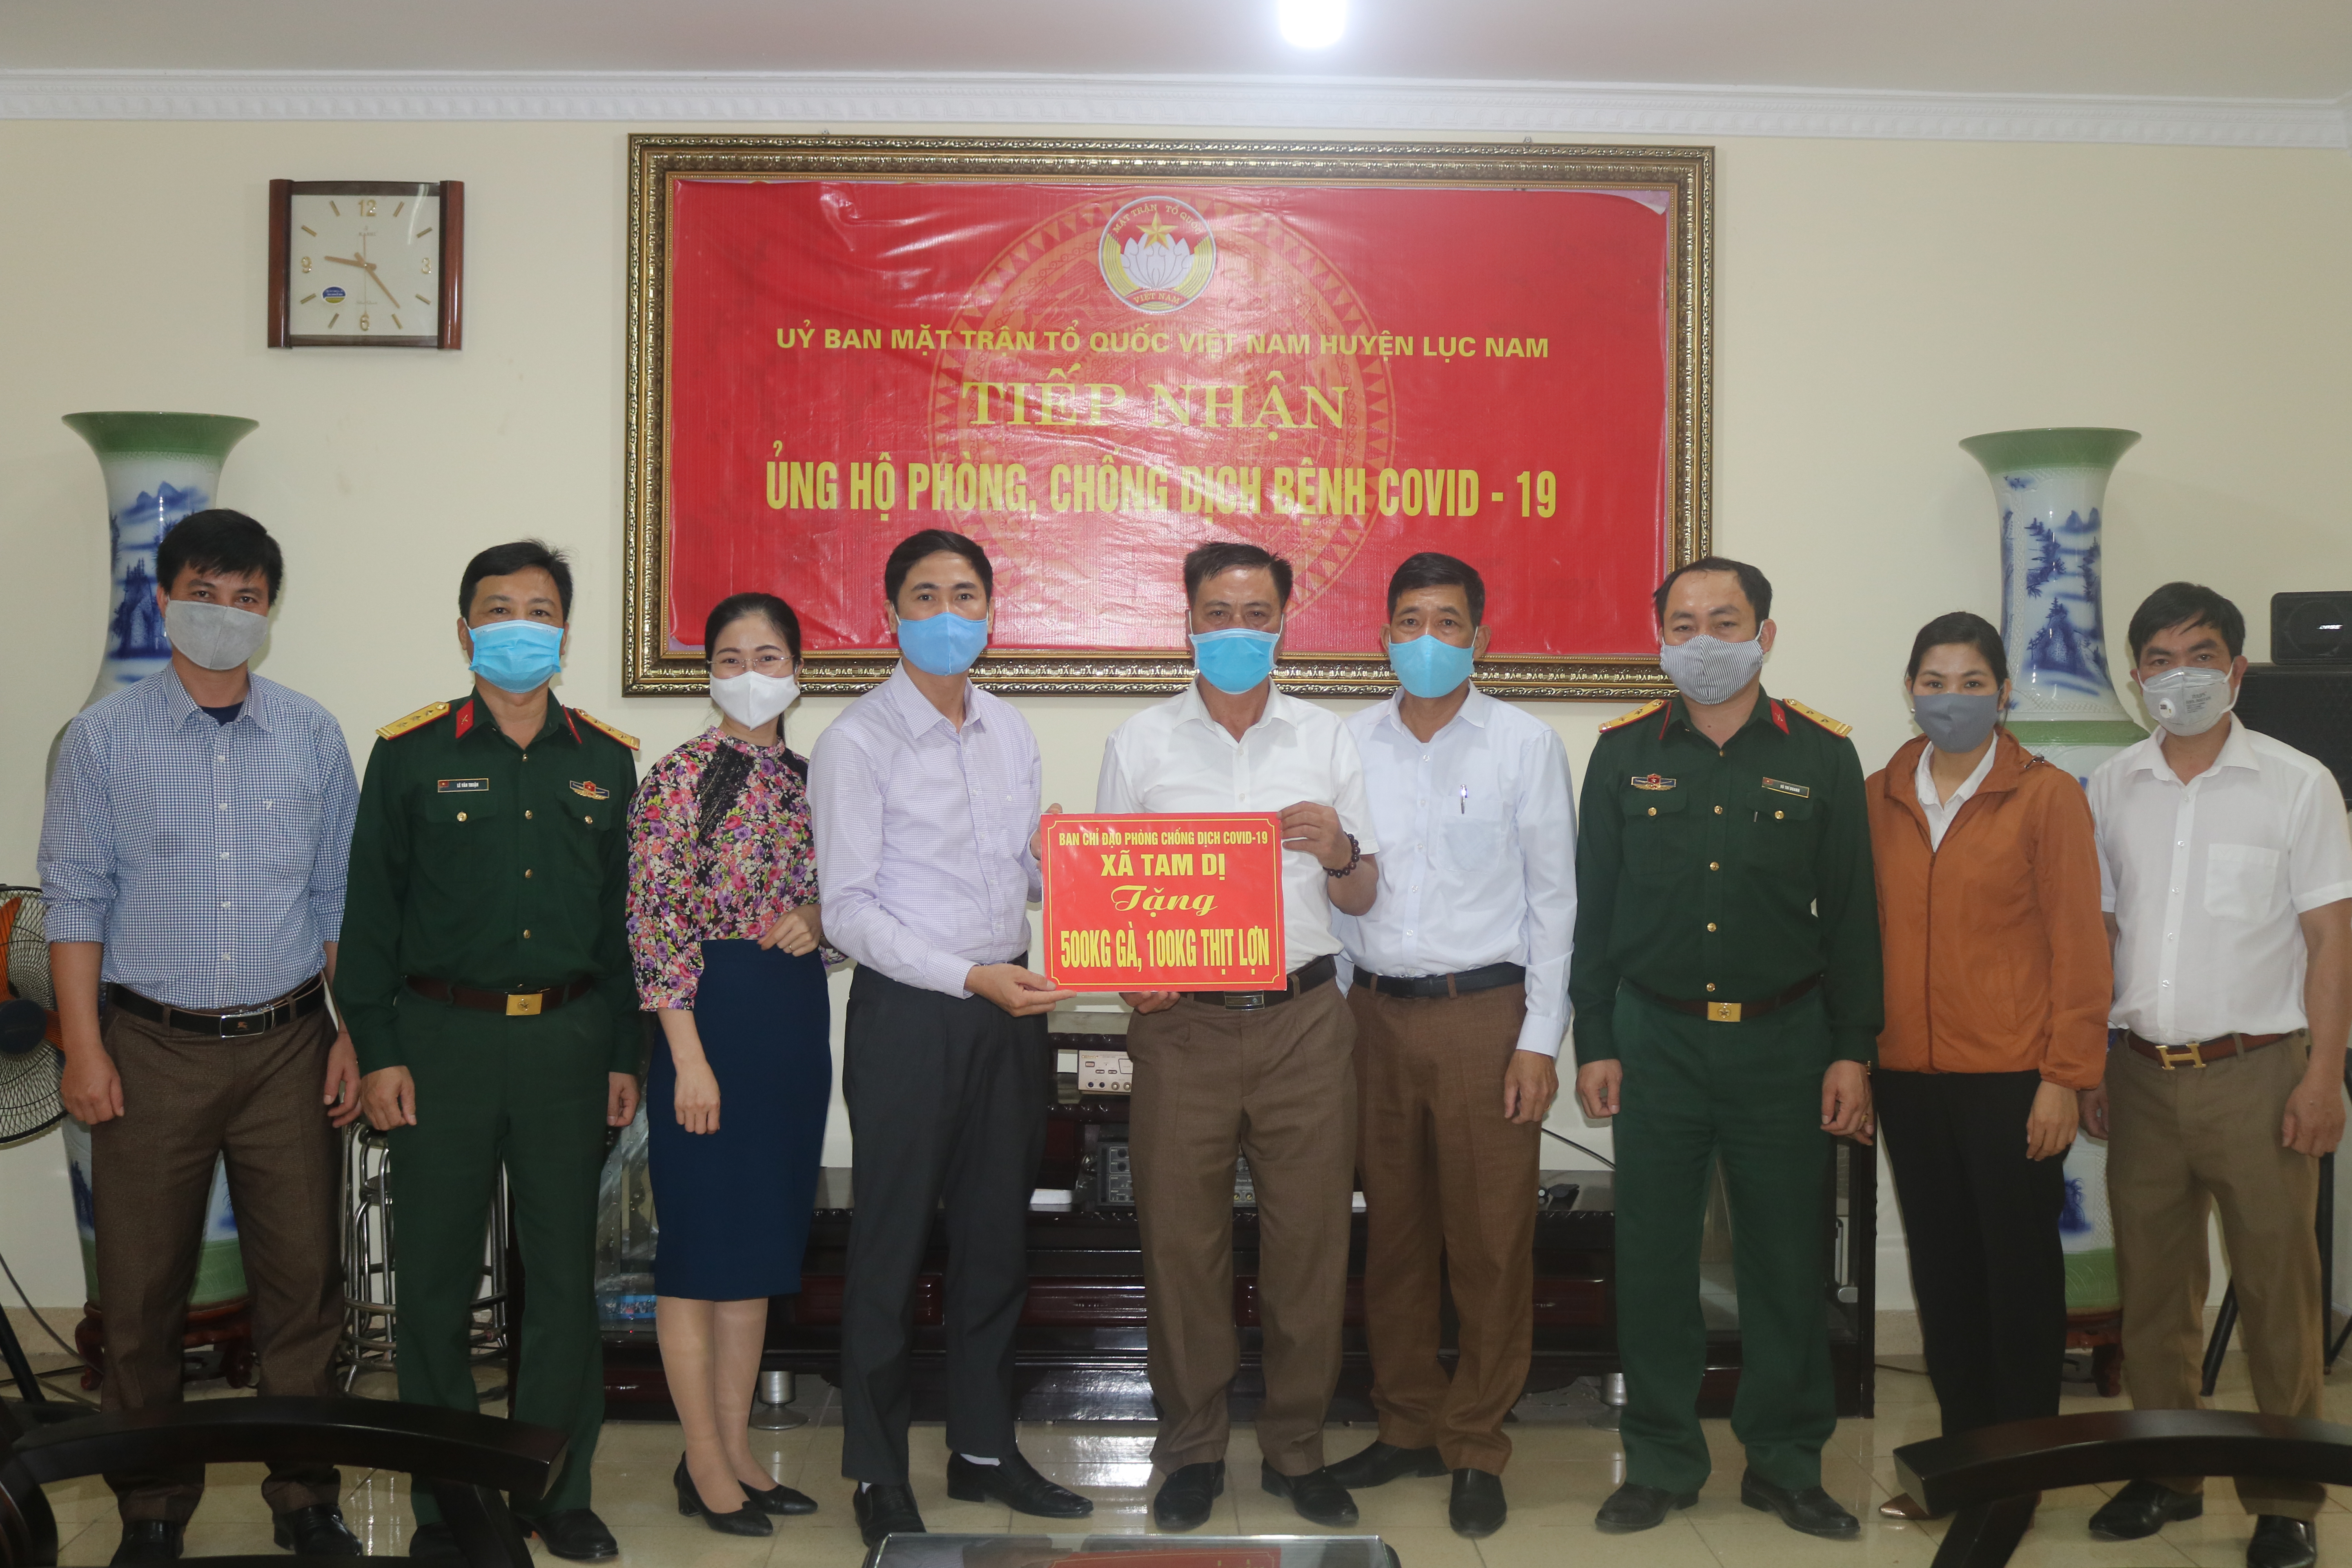 UBND huyện tiếp nhận ủng hộ phòng chống dịch Covid-19 của UBND xã Tam Dị